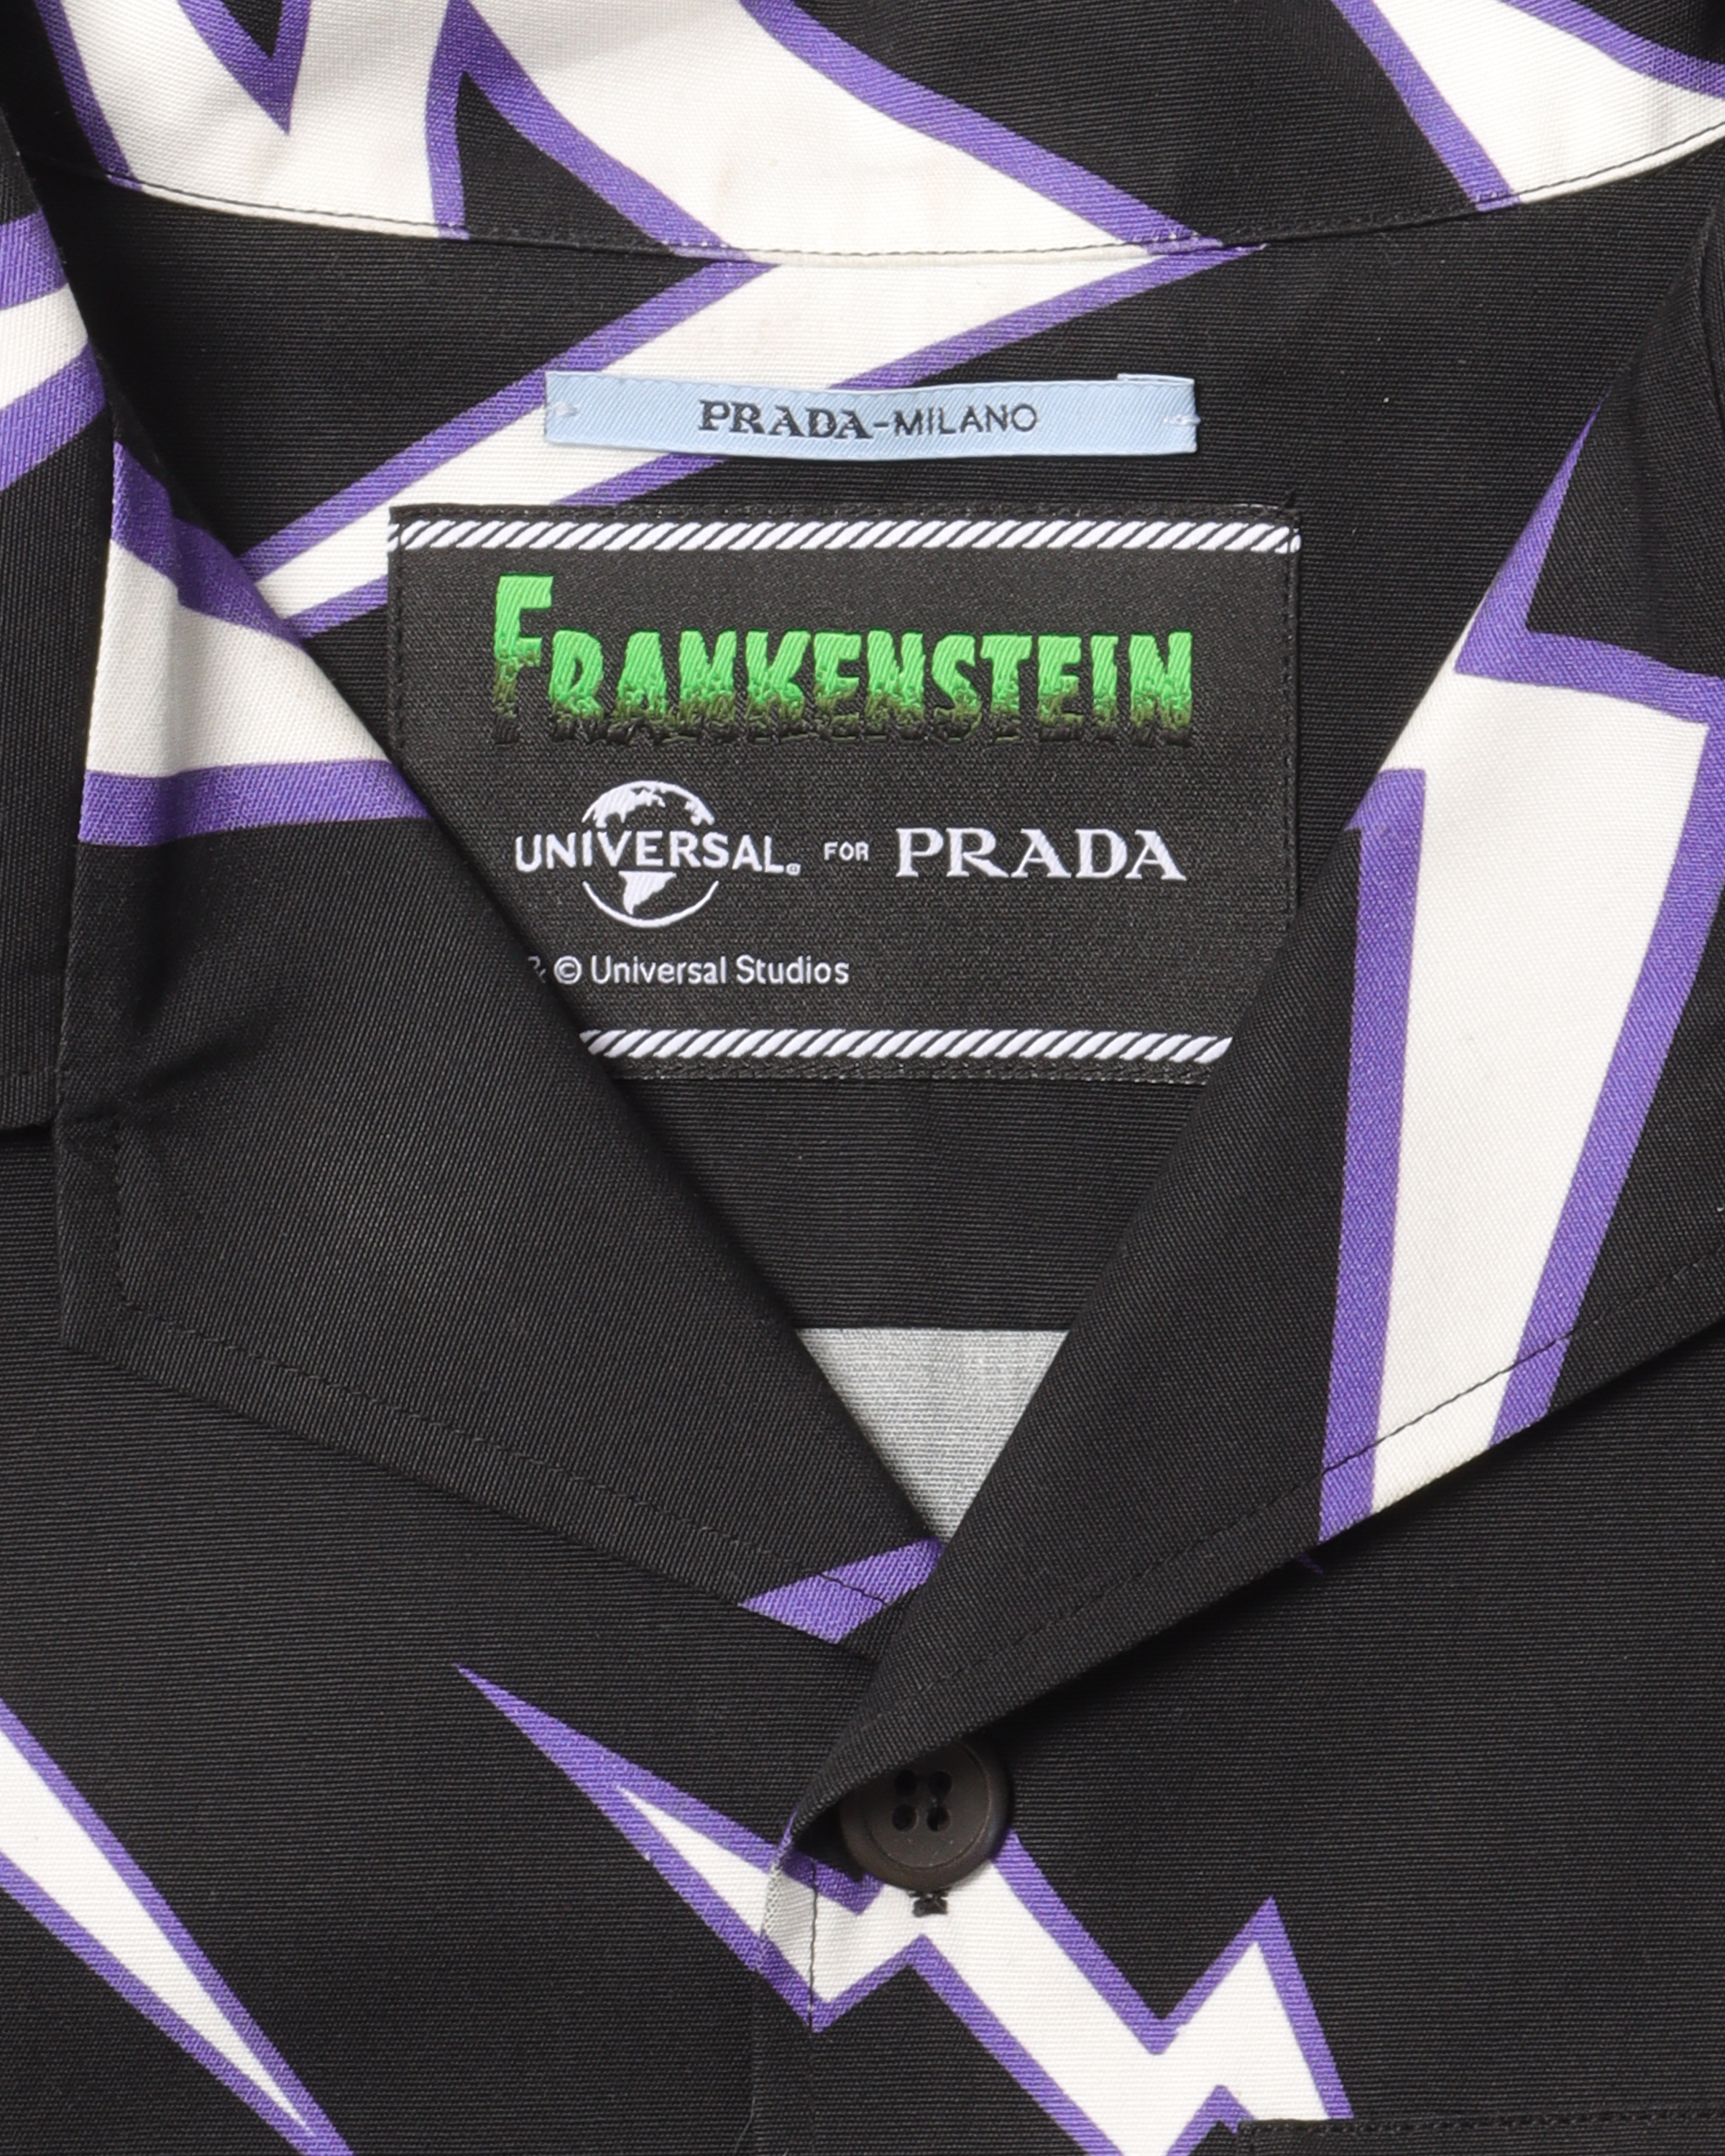 Frankenstein "Universal Studios" Button Up Shirt